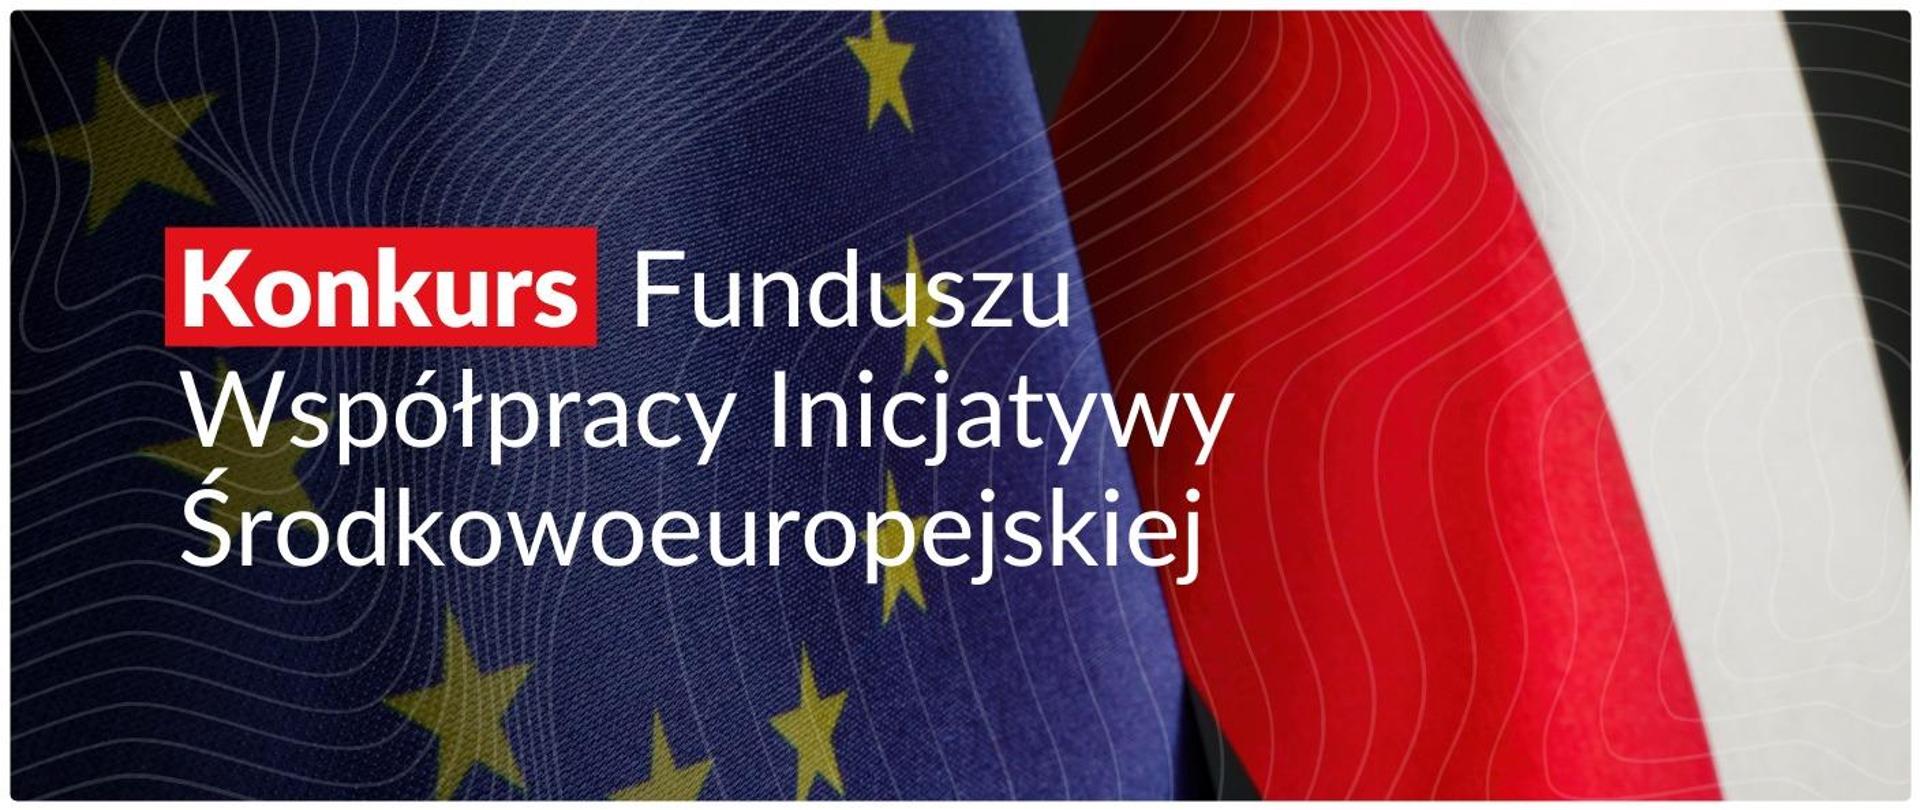 Ogłoszenie o konkursie
w ramach Funduszu Współpracy Inicjatywy Środkowoeuropejskiej
